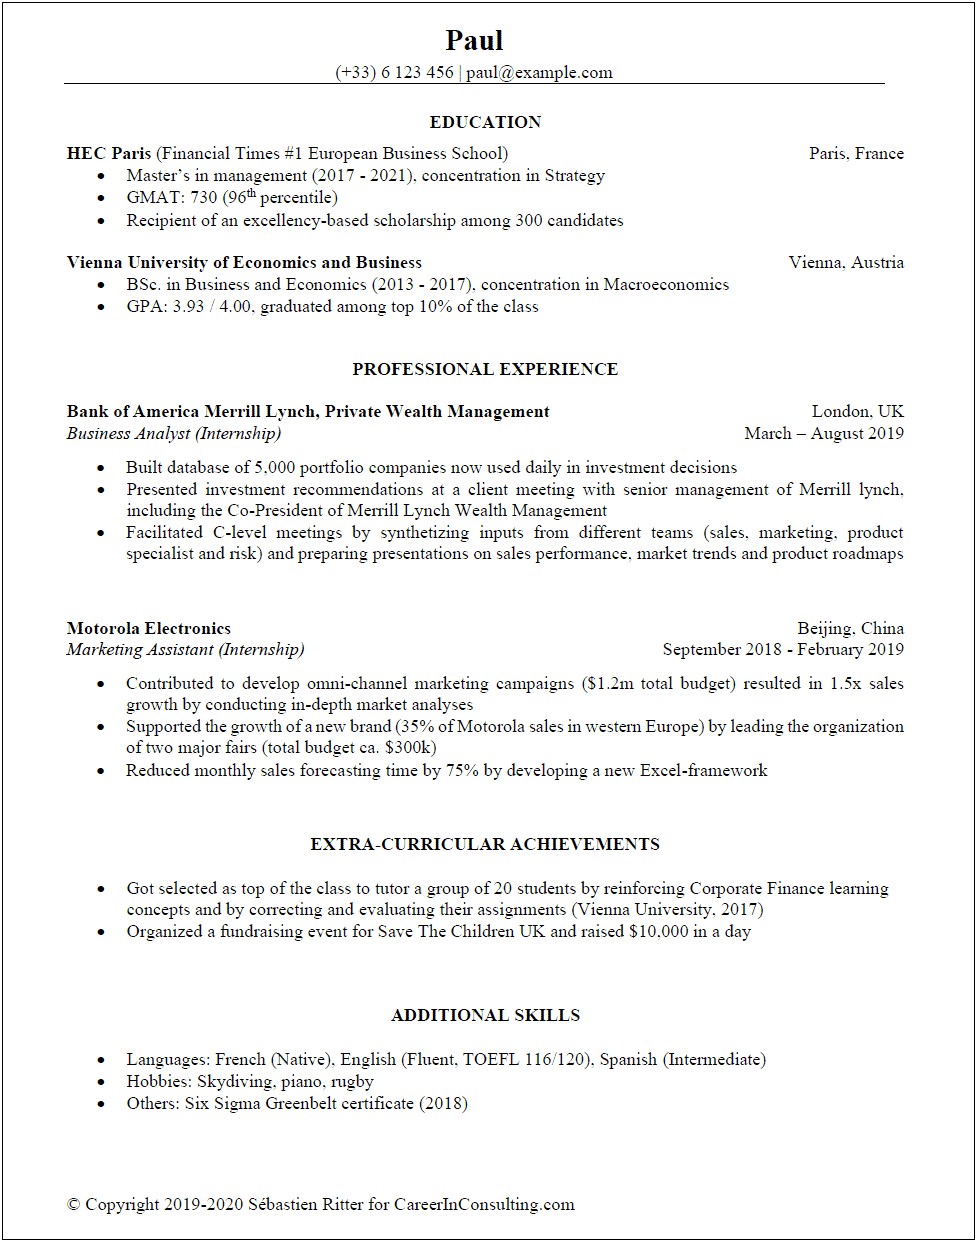 Skills To Put On English Major Resume